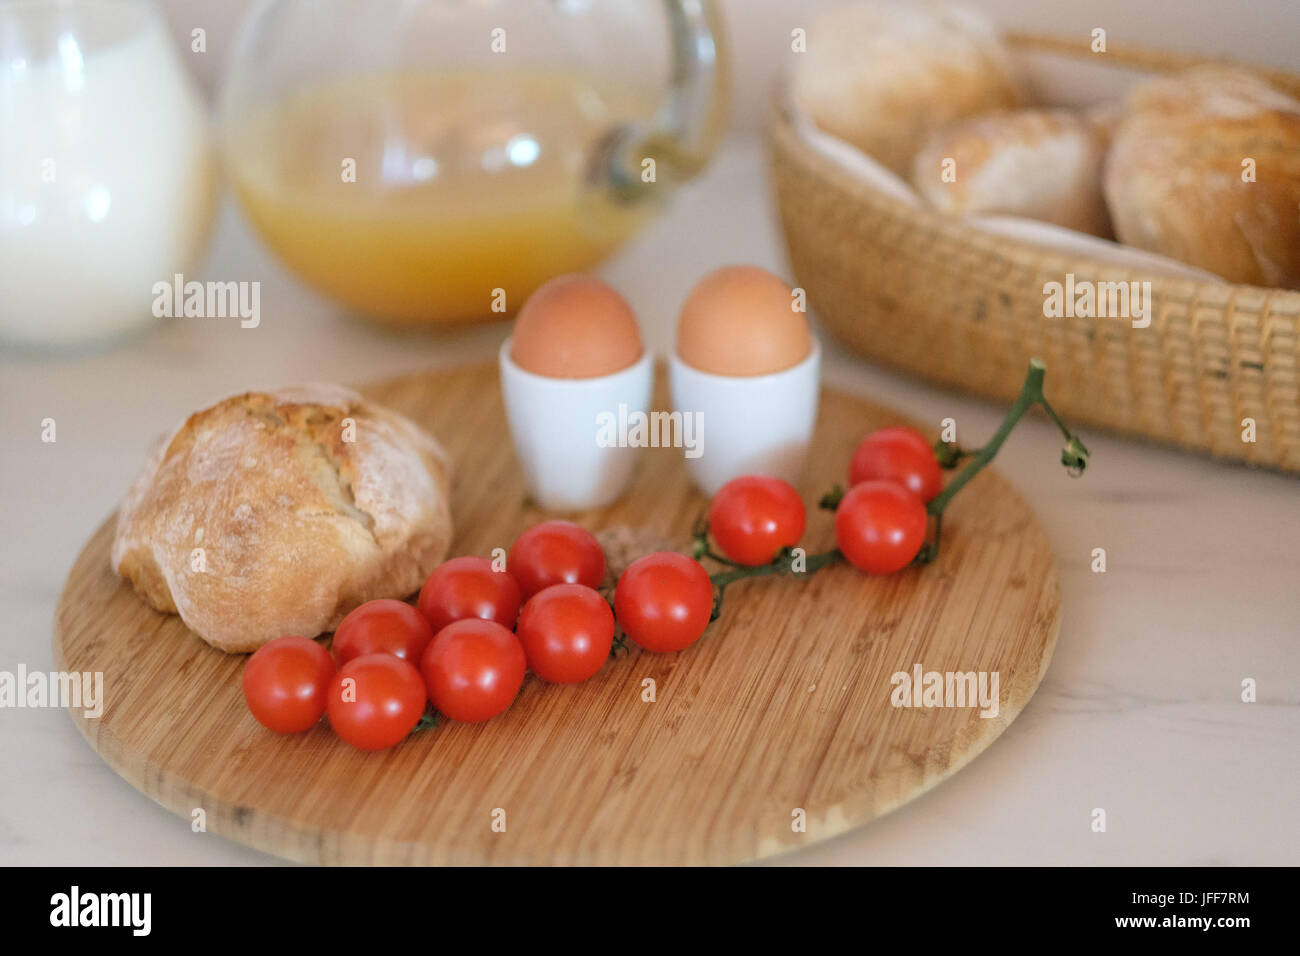 Gesundes Frühstück mit gekochten Eiern, Brot, Tomaten, Milch und Orangensaft Stockfoto